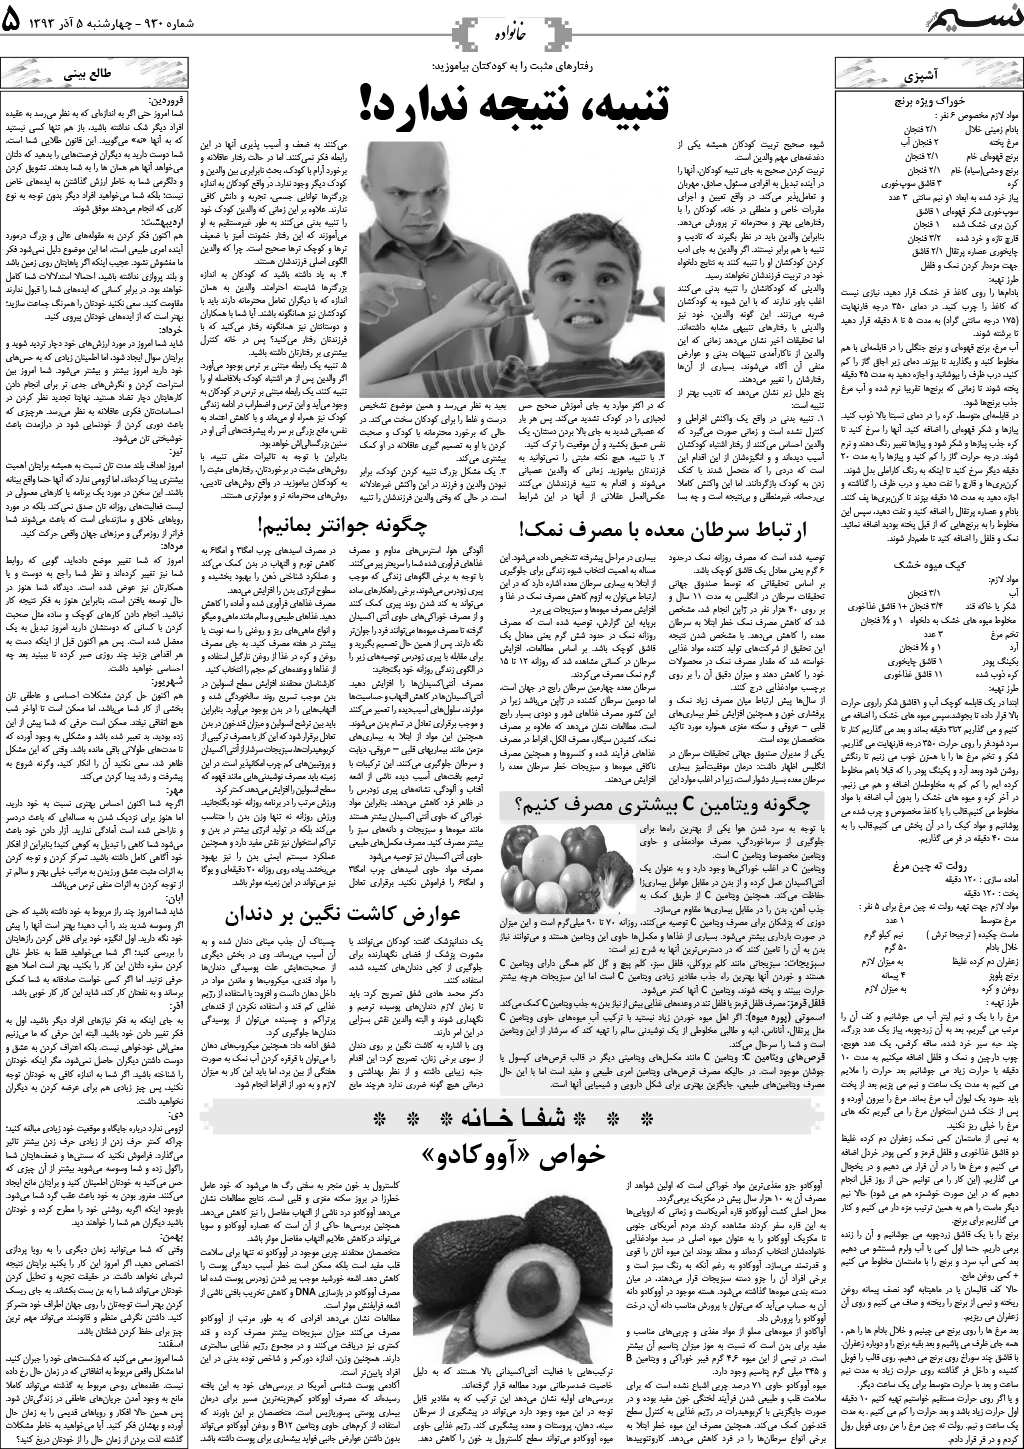 صفحه خانواده روزنامه نسیم شماره 930